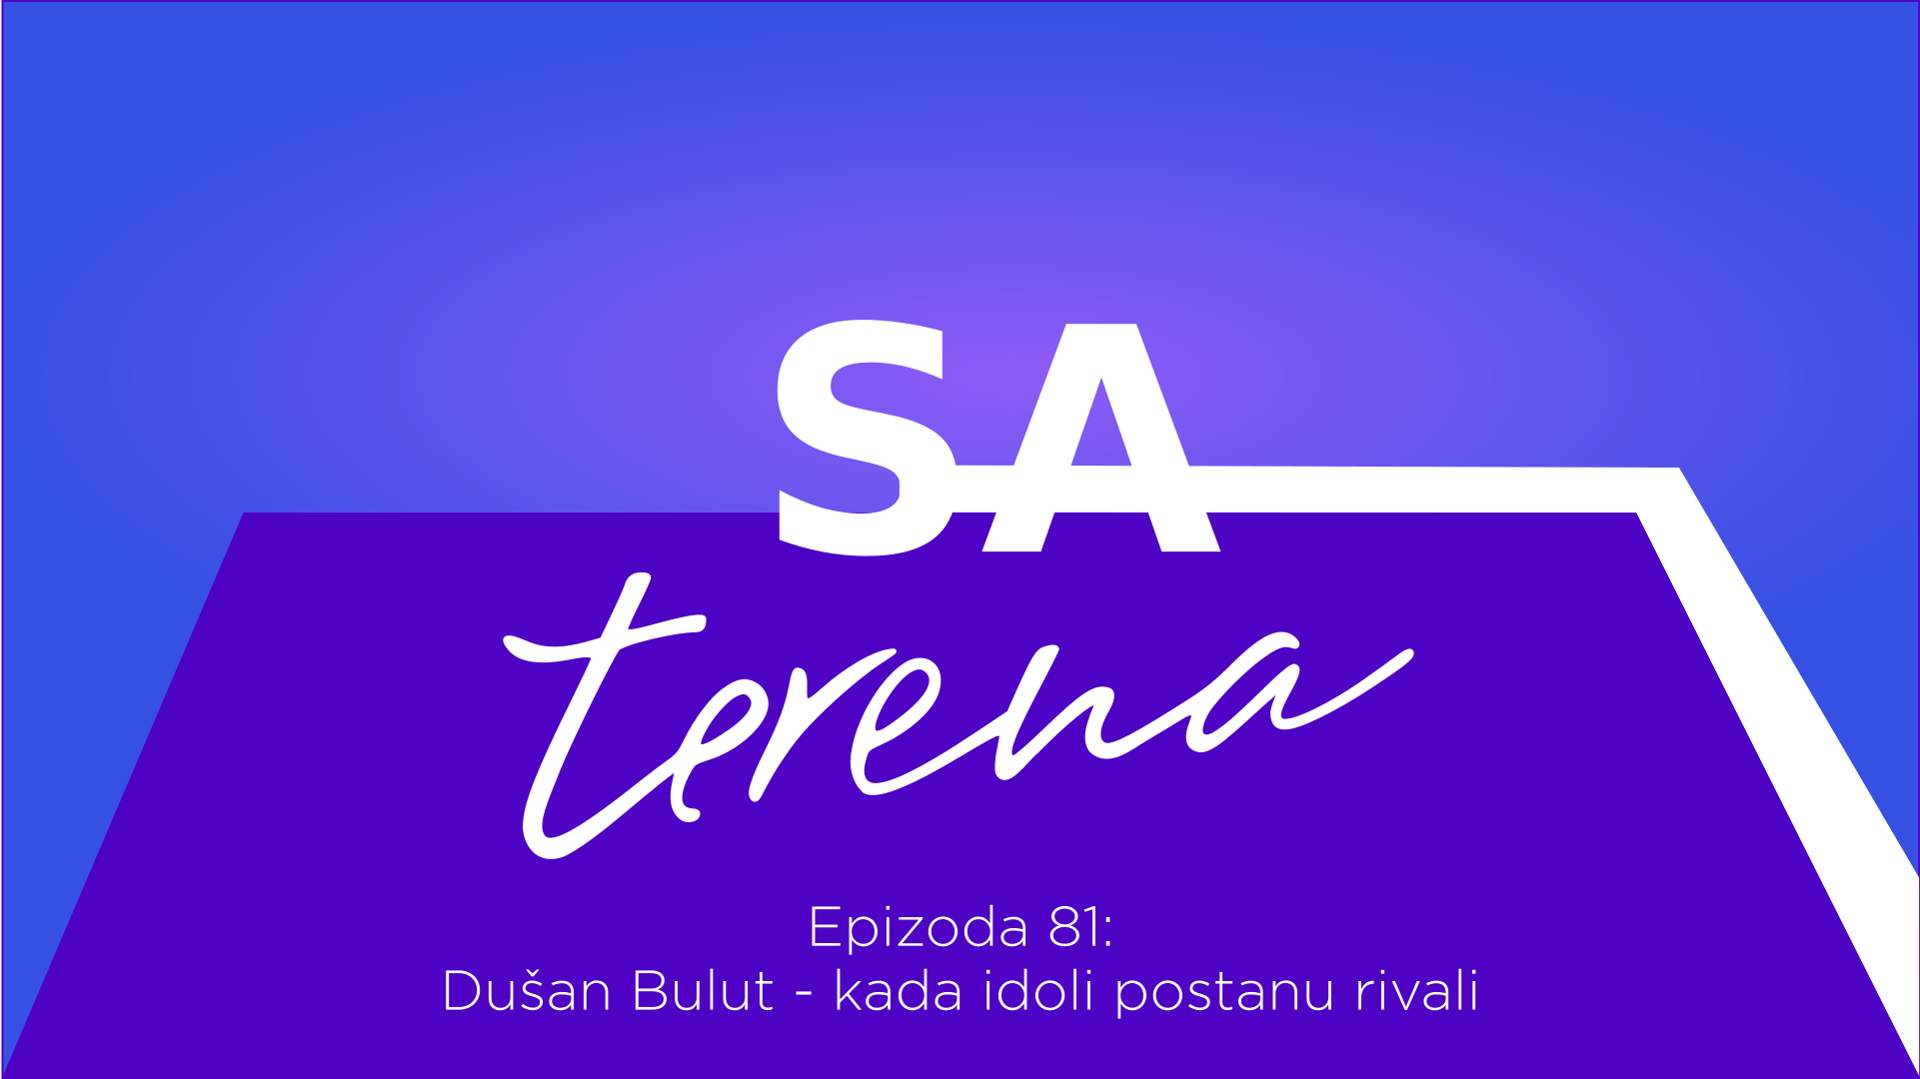 Sa terena 81: Dušan Bulut - kada idoli postanu rivali